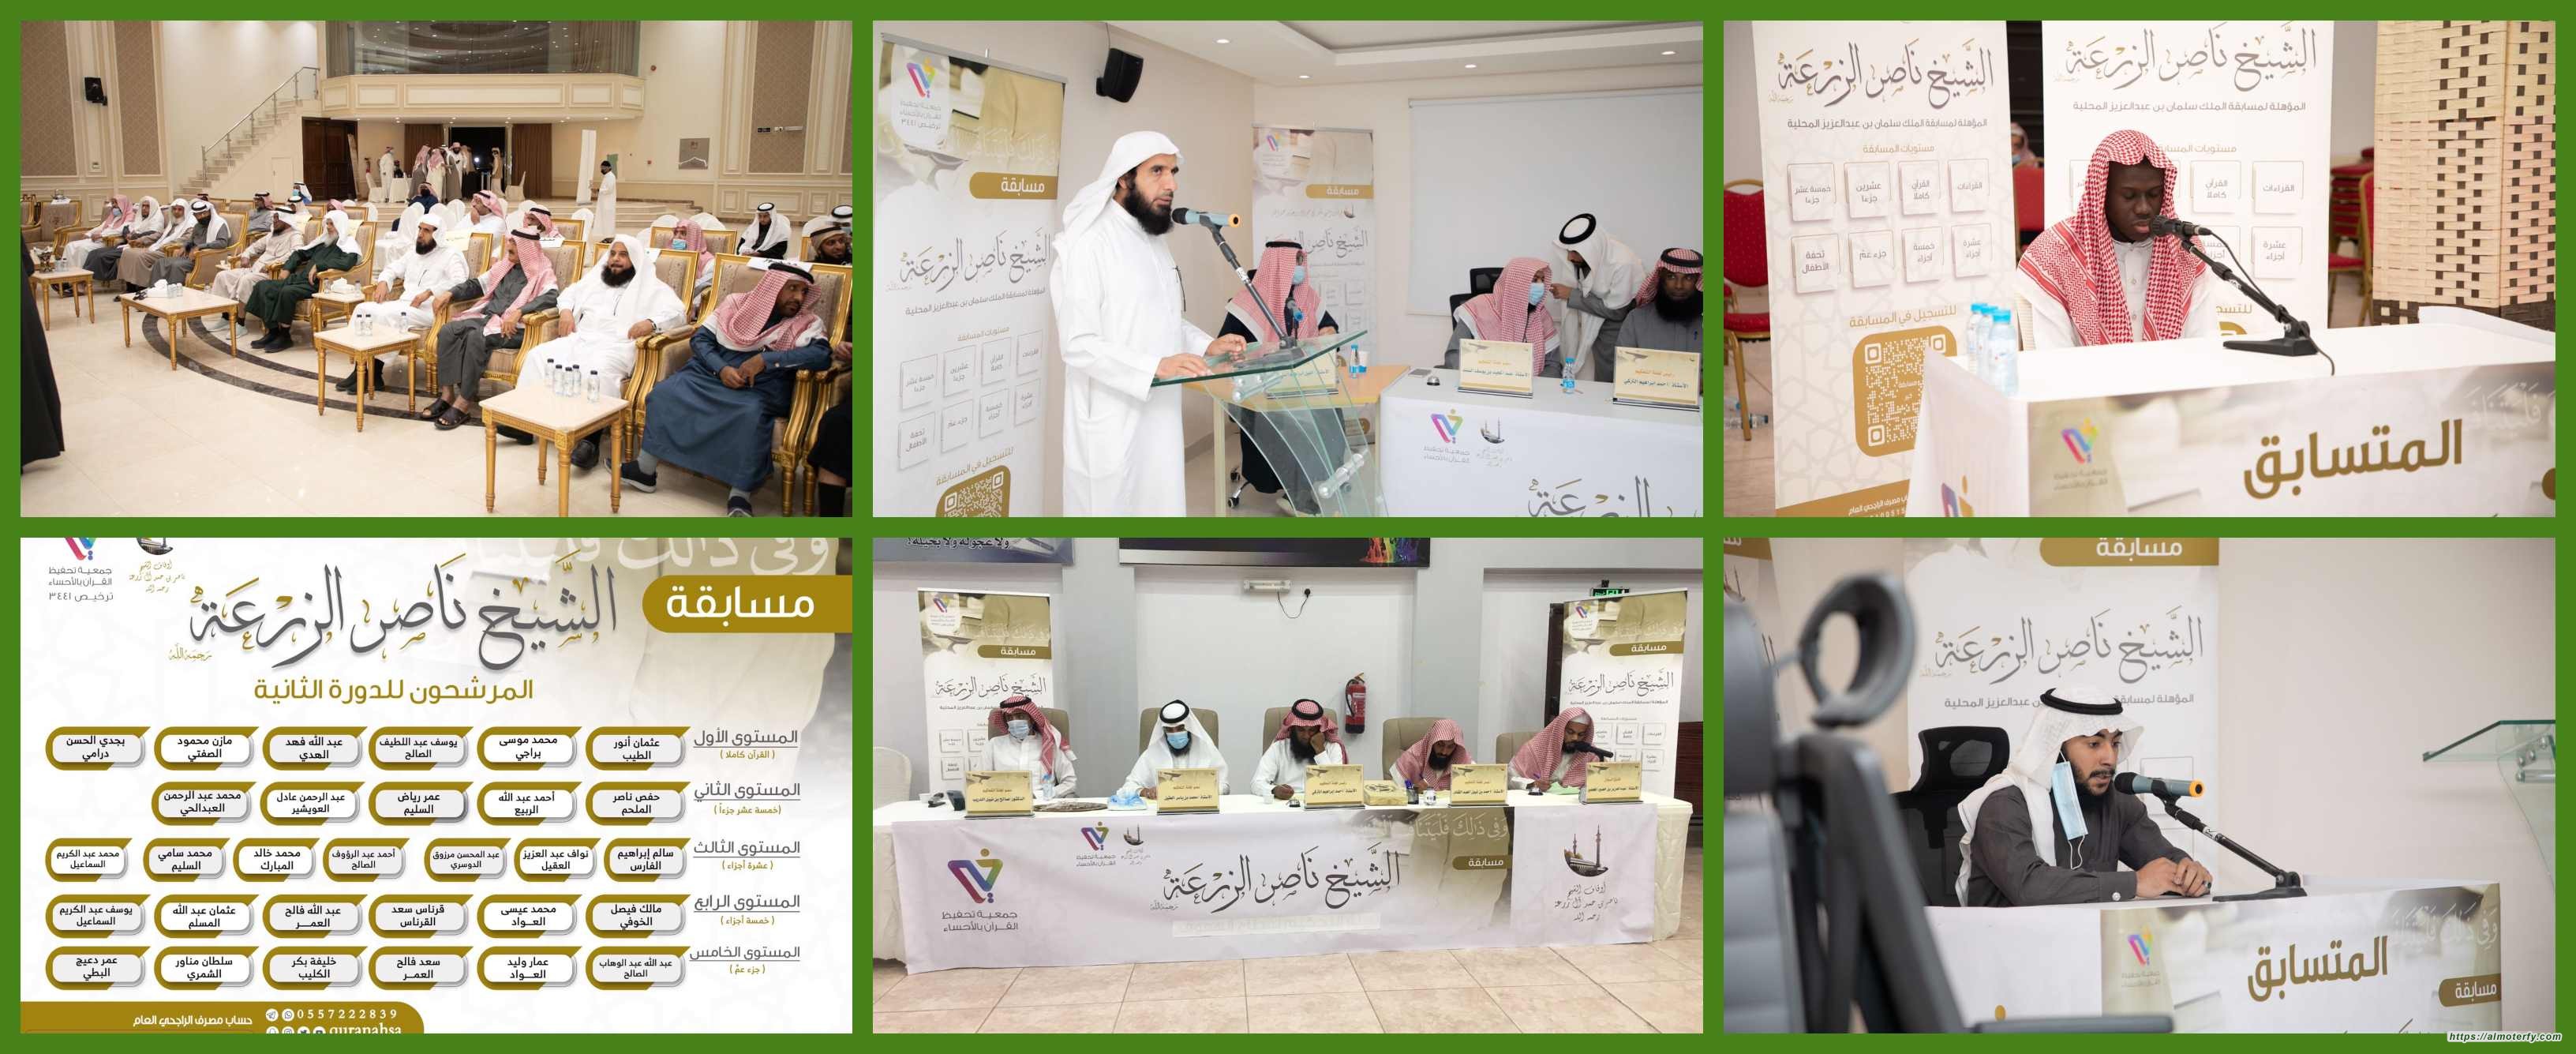 (٢٠٠متسابق) يتنافسون في مسابقة الشيخ ناصر آل زرعة -رحمه الله- للقرآن الكريم بالأحساء